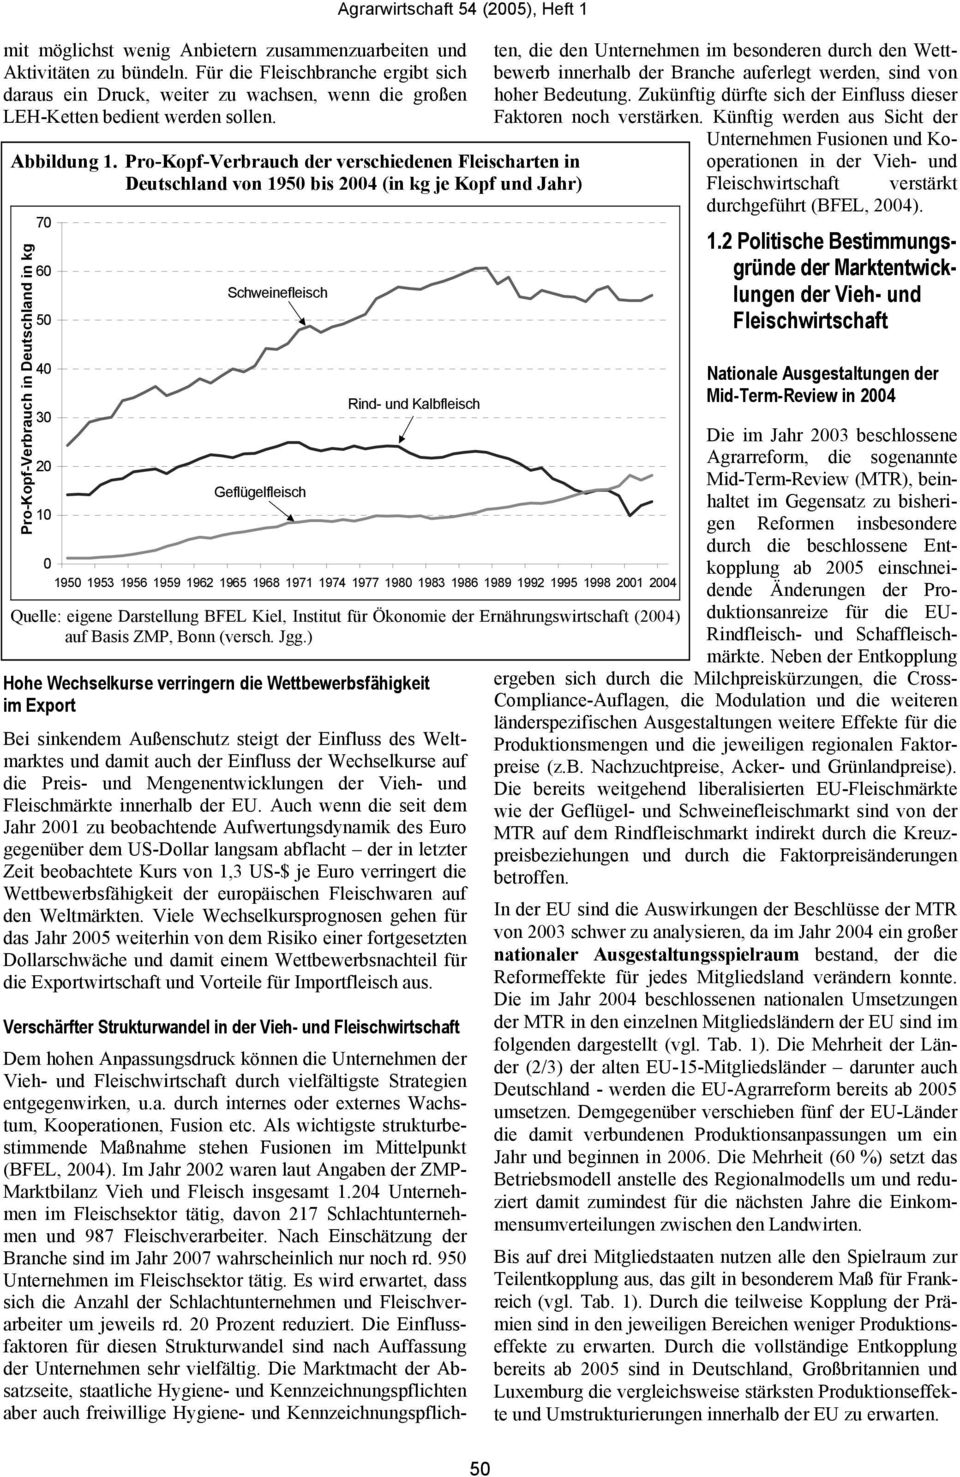 Pro-Kopf-Verbrauch der verschiedenen Fleischarten in Deutschland von 1950 bis 2004 (in kg je Kopf und Jahr) Pro-Kopf-Verbrauch in Deutschland in kg 70 60 50 40 30 20 10 Schweinefleisch